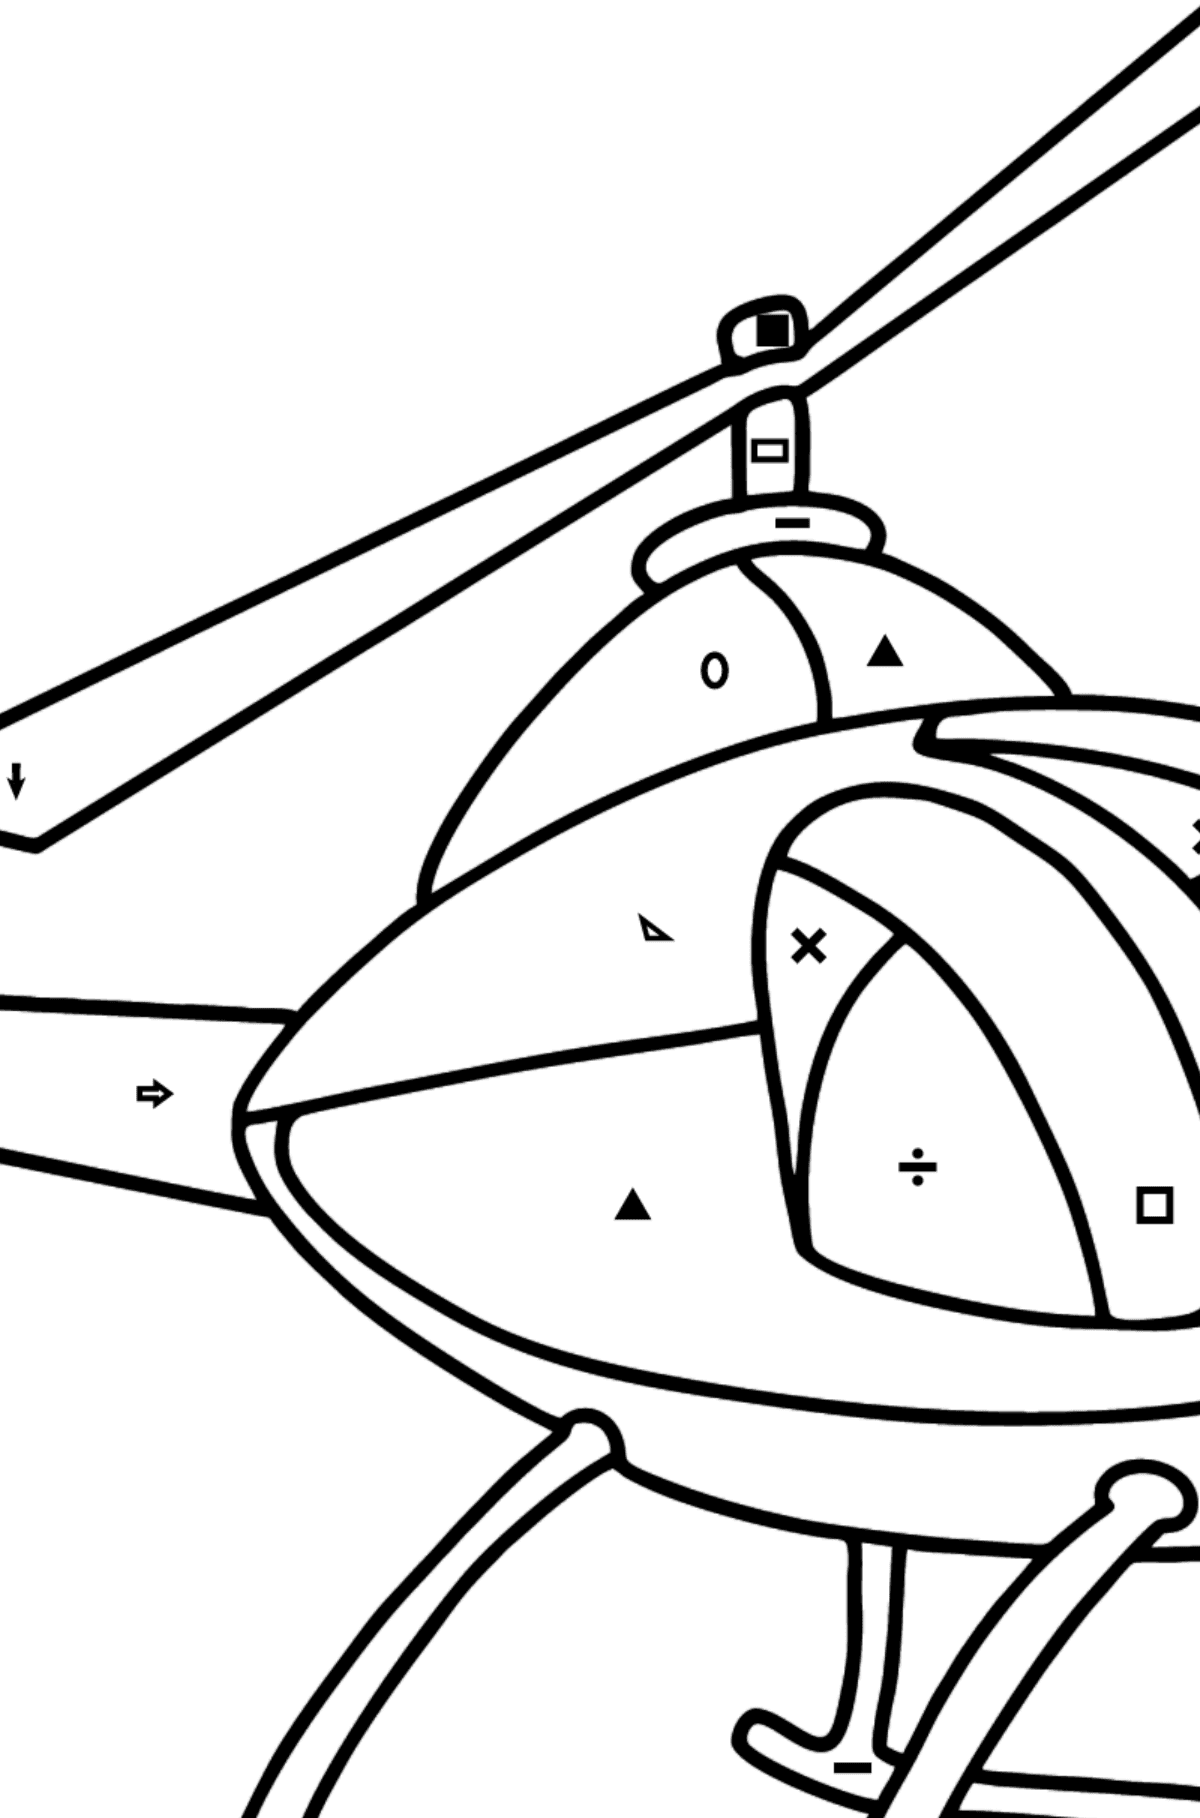 Página para colorear de helicópteros para niños - Colorear por Símbolos para Niños